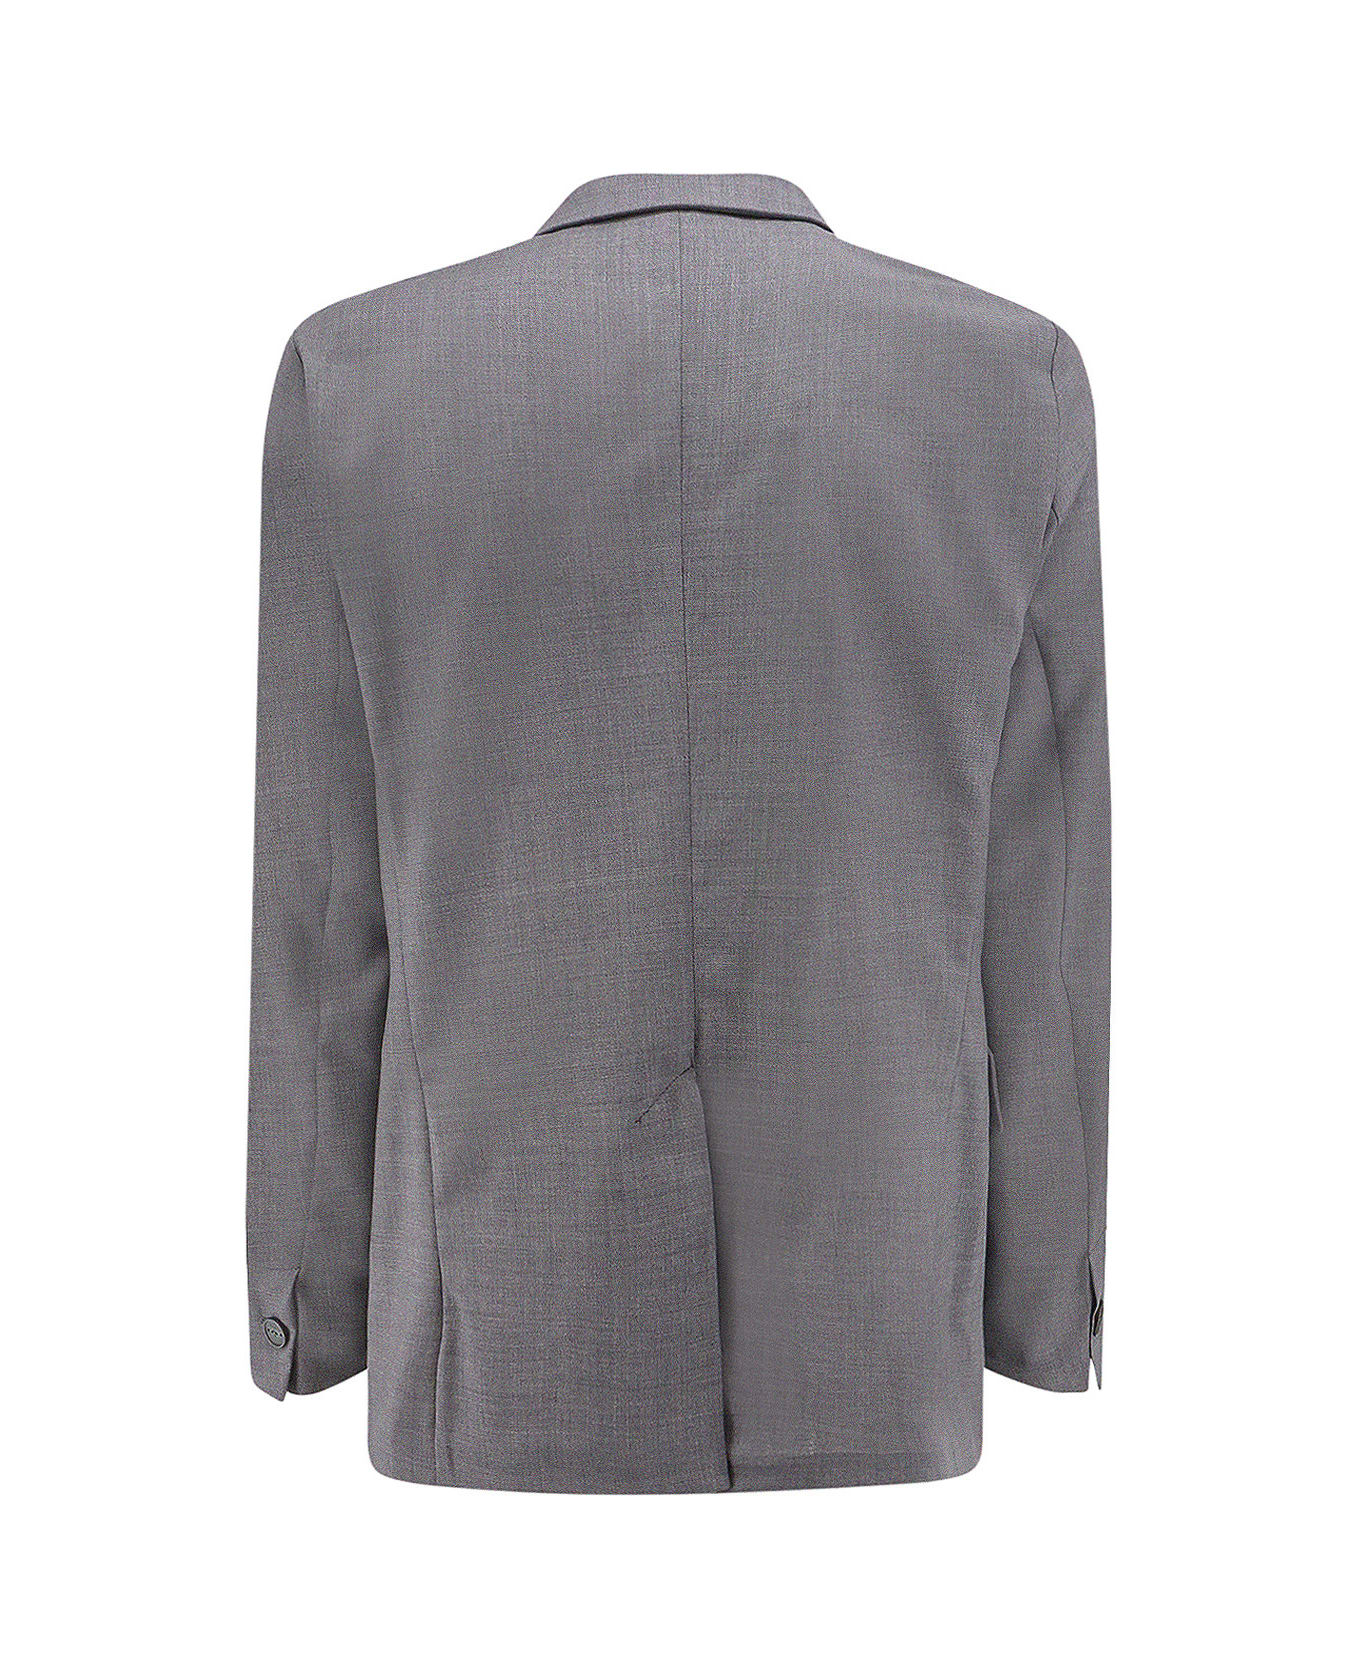 Hevò Suit - Grey スーツ